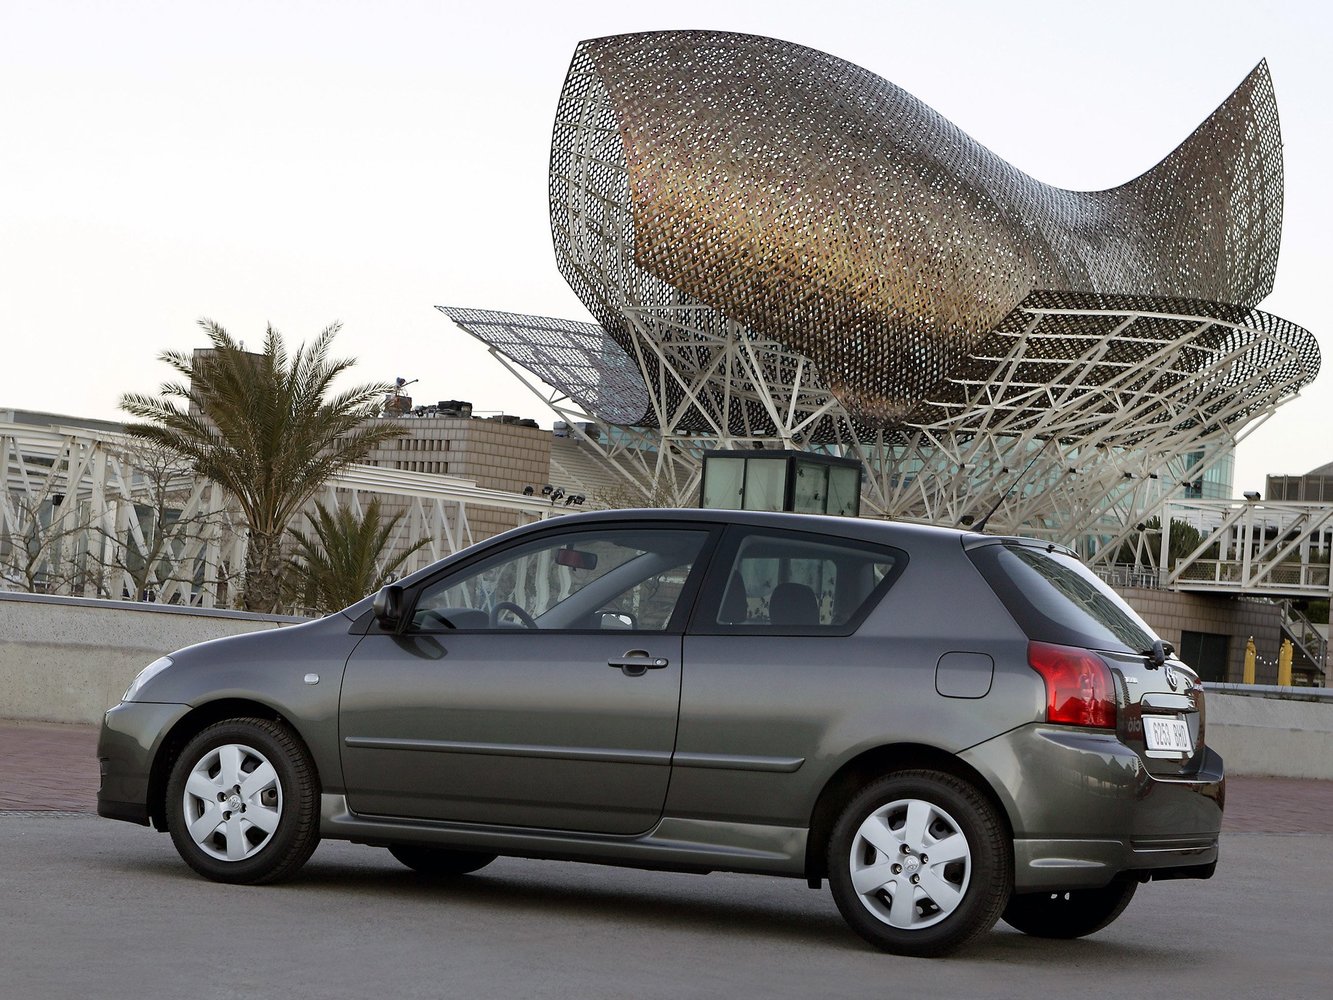 хэтчбек 3 дв. Toyota Corolla 2004 - 2007г выпуска модификация 1.4 MT (90 л.с.)